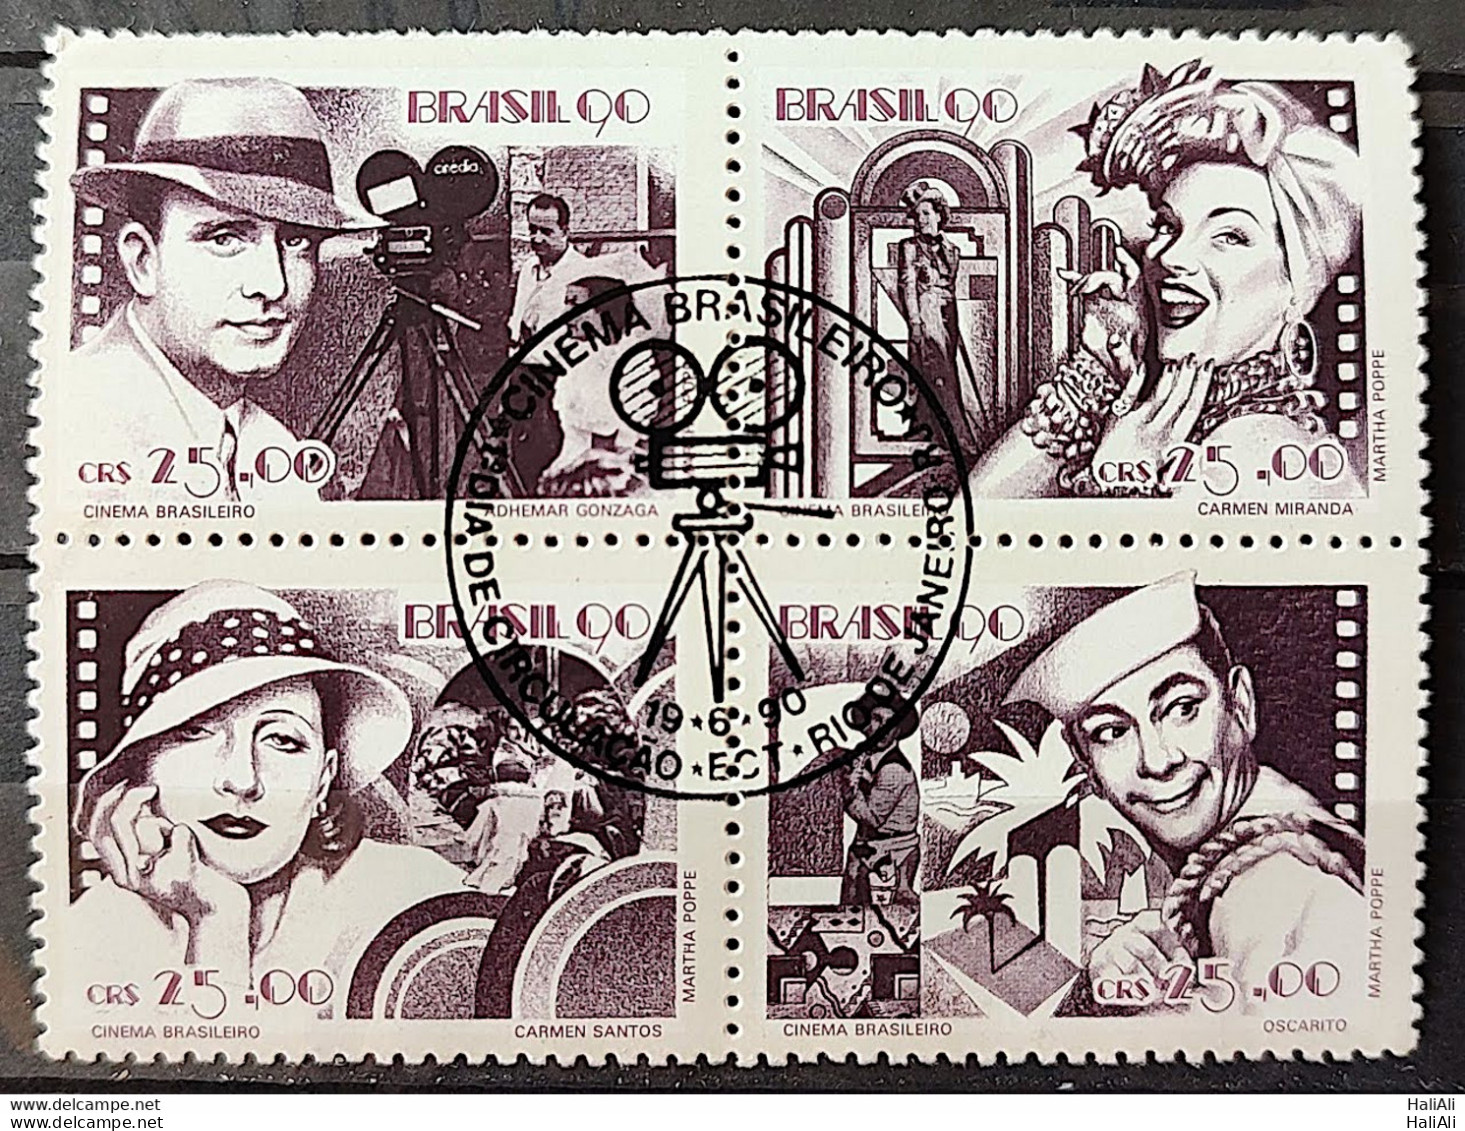 C 1687 Brazil Stamp Brazilian Cinema Gonzaga Carmen Miranda Occarito 1990 Complete Series CBC RJ - Ungebraucht